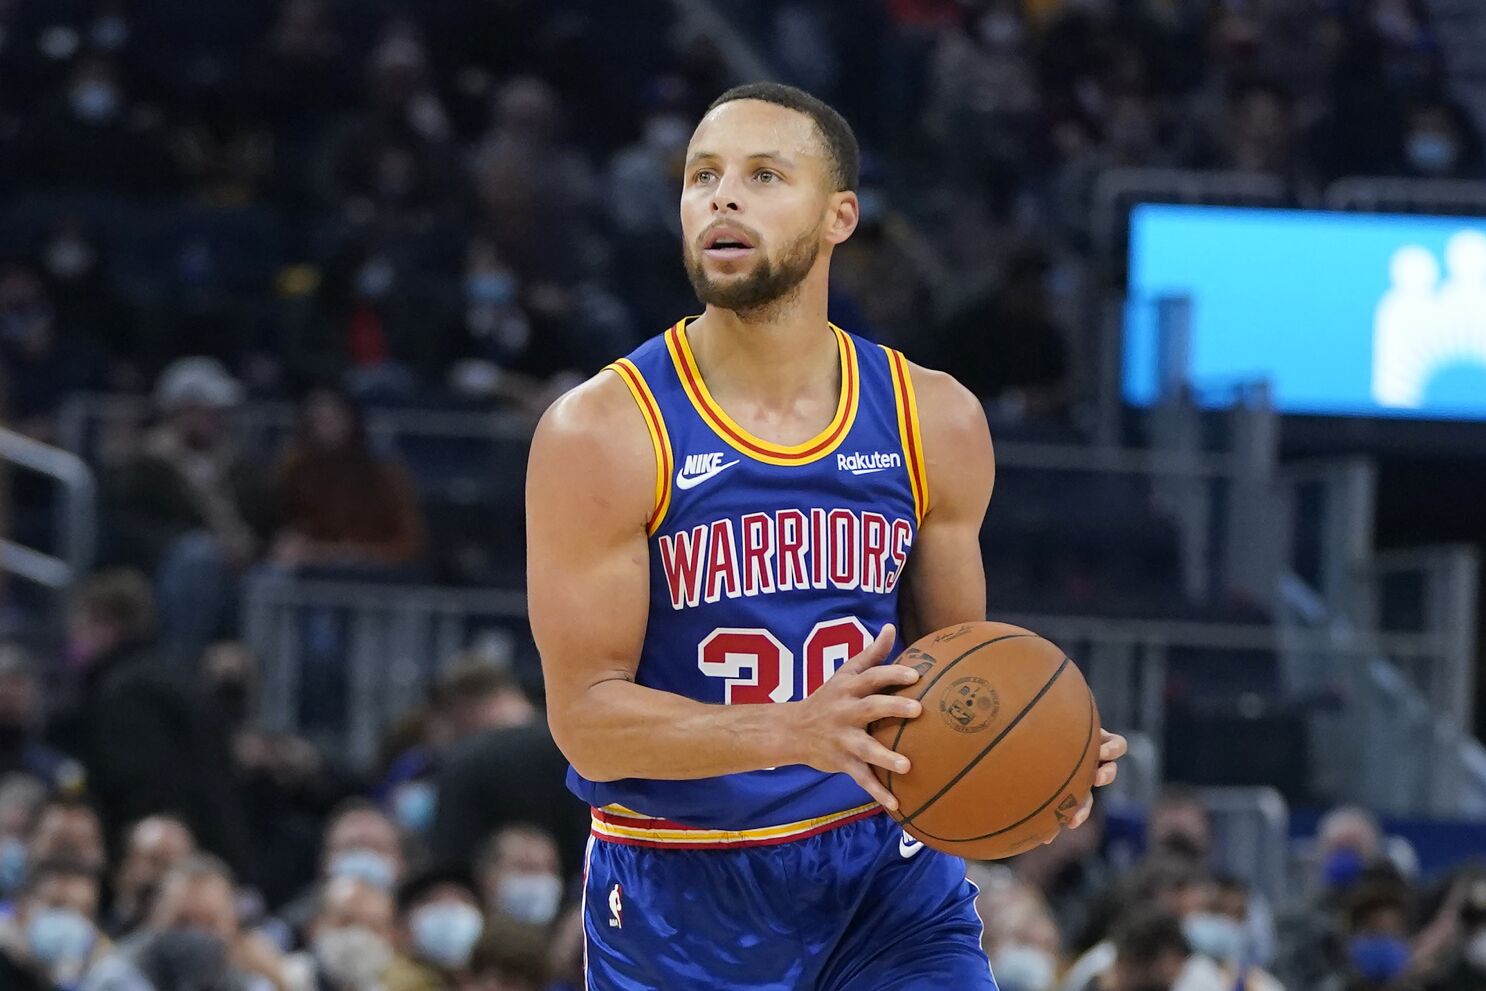 ANÁLISIS: Curry da atractivo a la NBA incluso antes de jugar - Los Angeles  Times